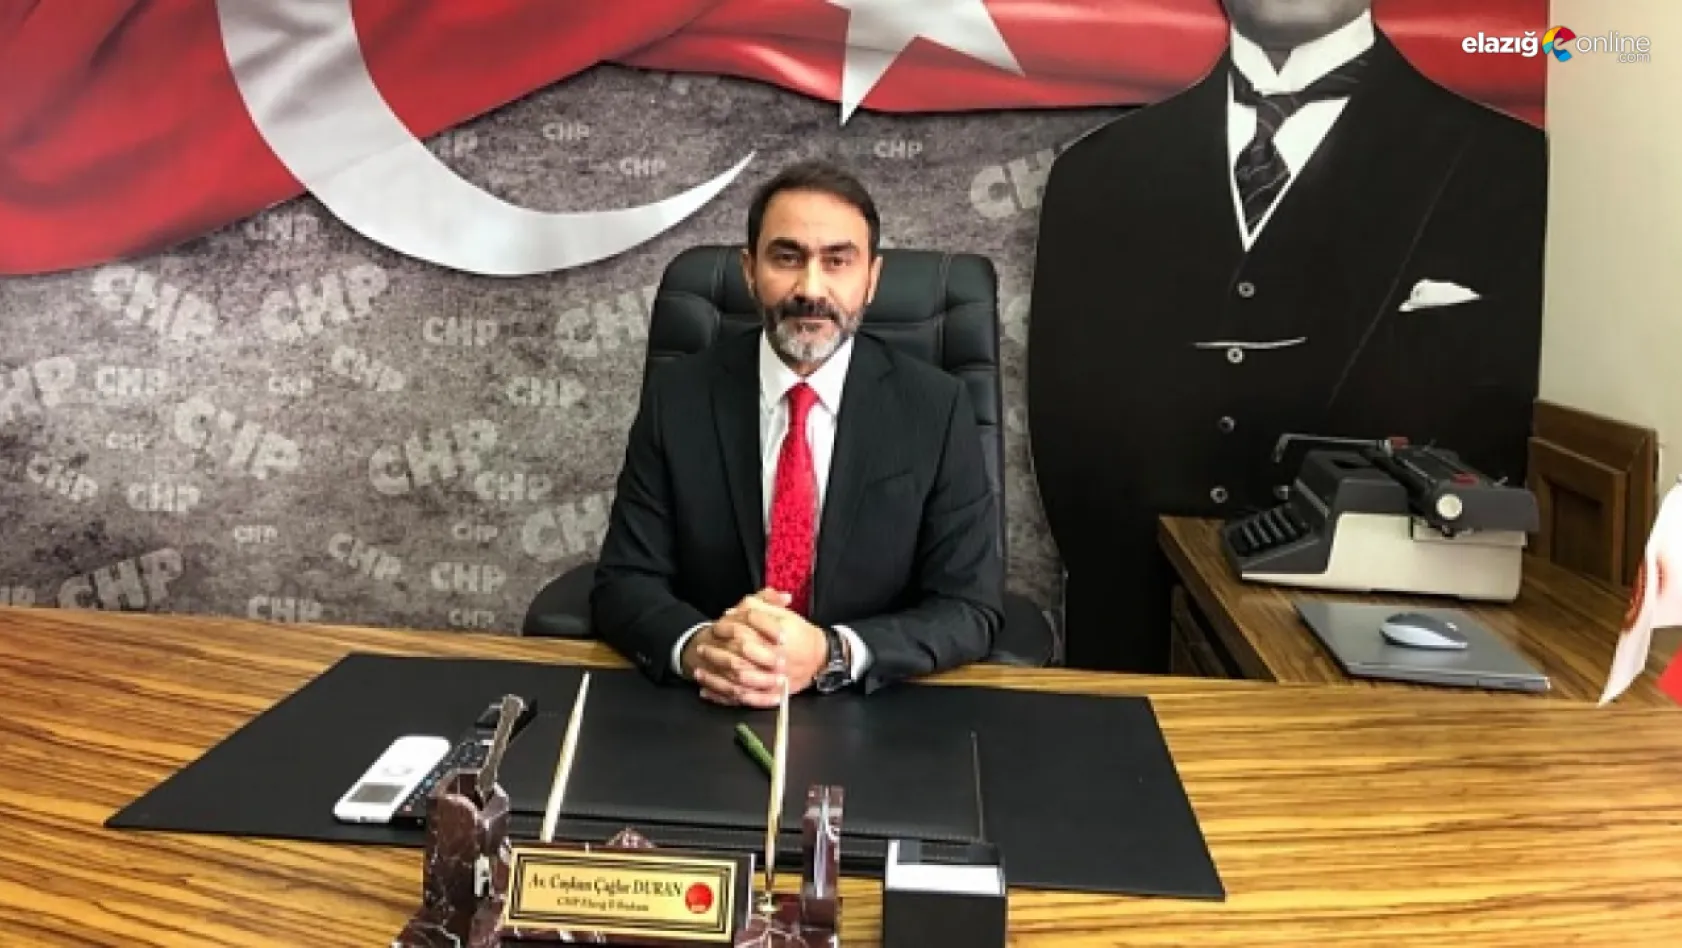 CHP İl Başkanı Duran'dan MHP Genel Başkanı Bahçeli'ye Hoş geldin mesajı!